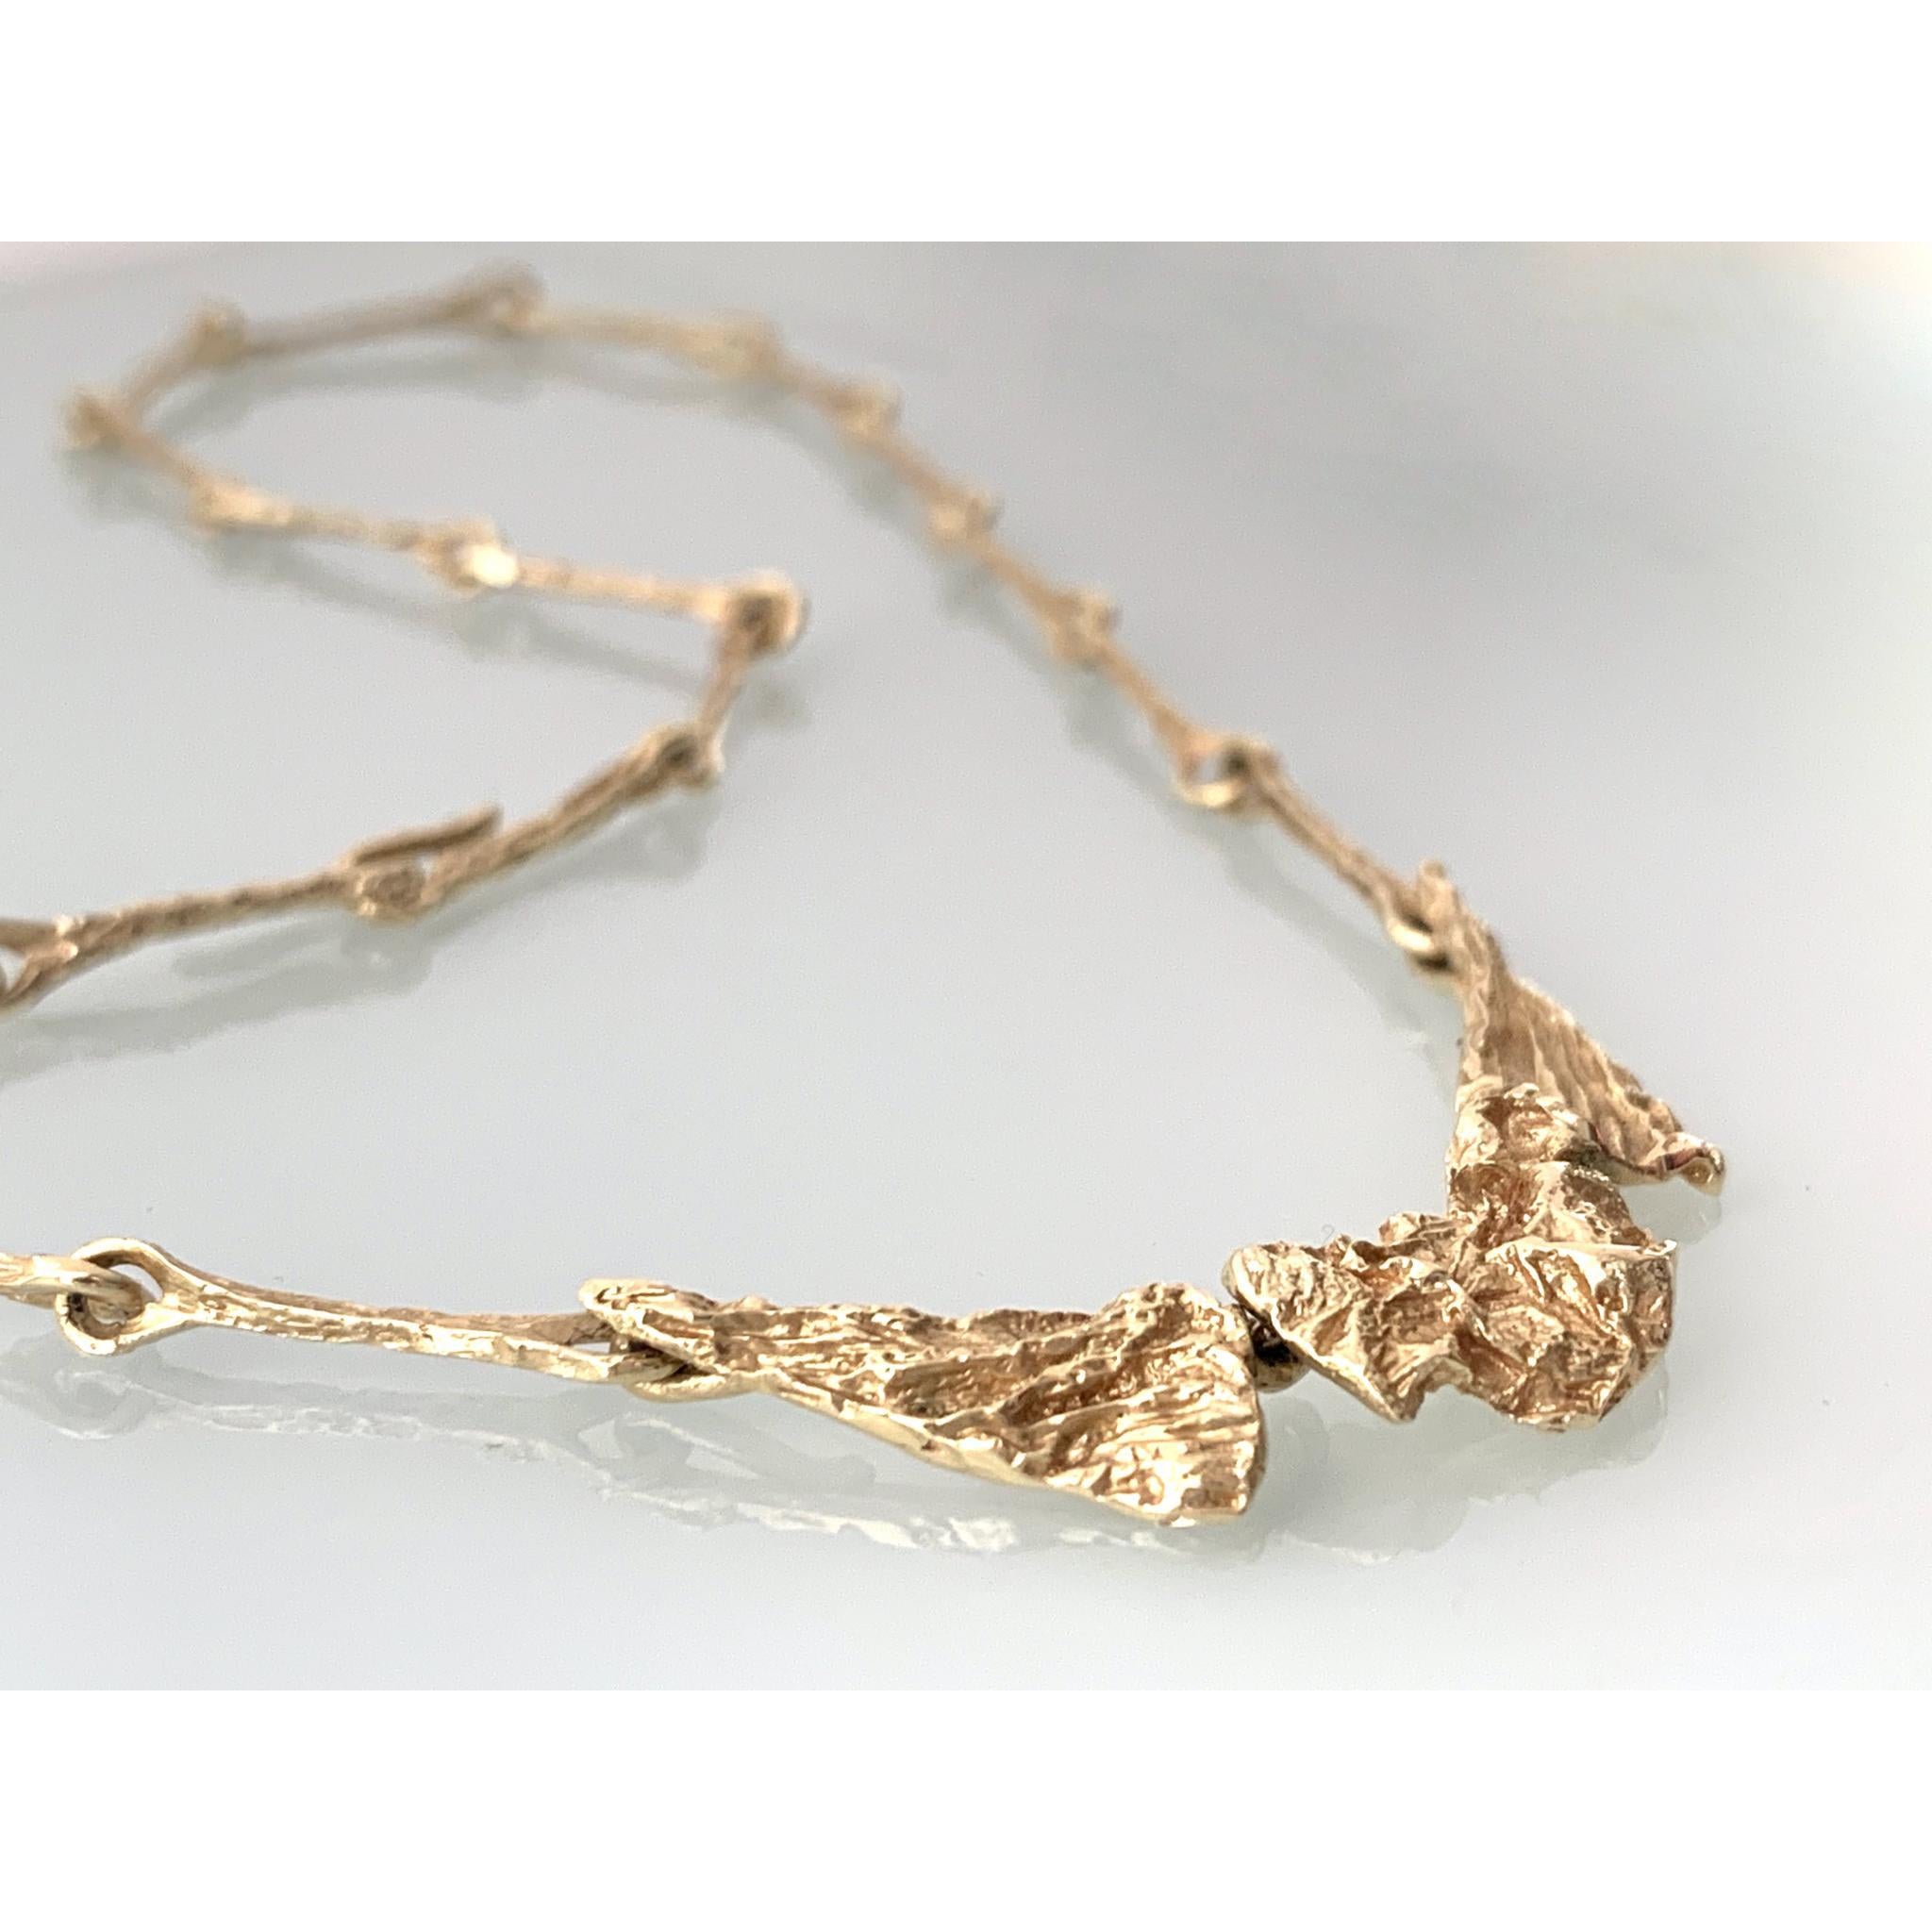 Seltene 14 Karat Gold Brutalist Halskette 
des dänischen Designers Harry Askel Norgaard
Gestempelt HAN 585
Segmentierte Frontpartie, die eine natürlich geformte Oberfläche darstellt
Führung durch lange Glieder in einem sich ergänzenden Design 
die